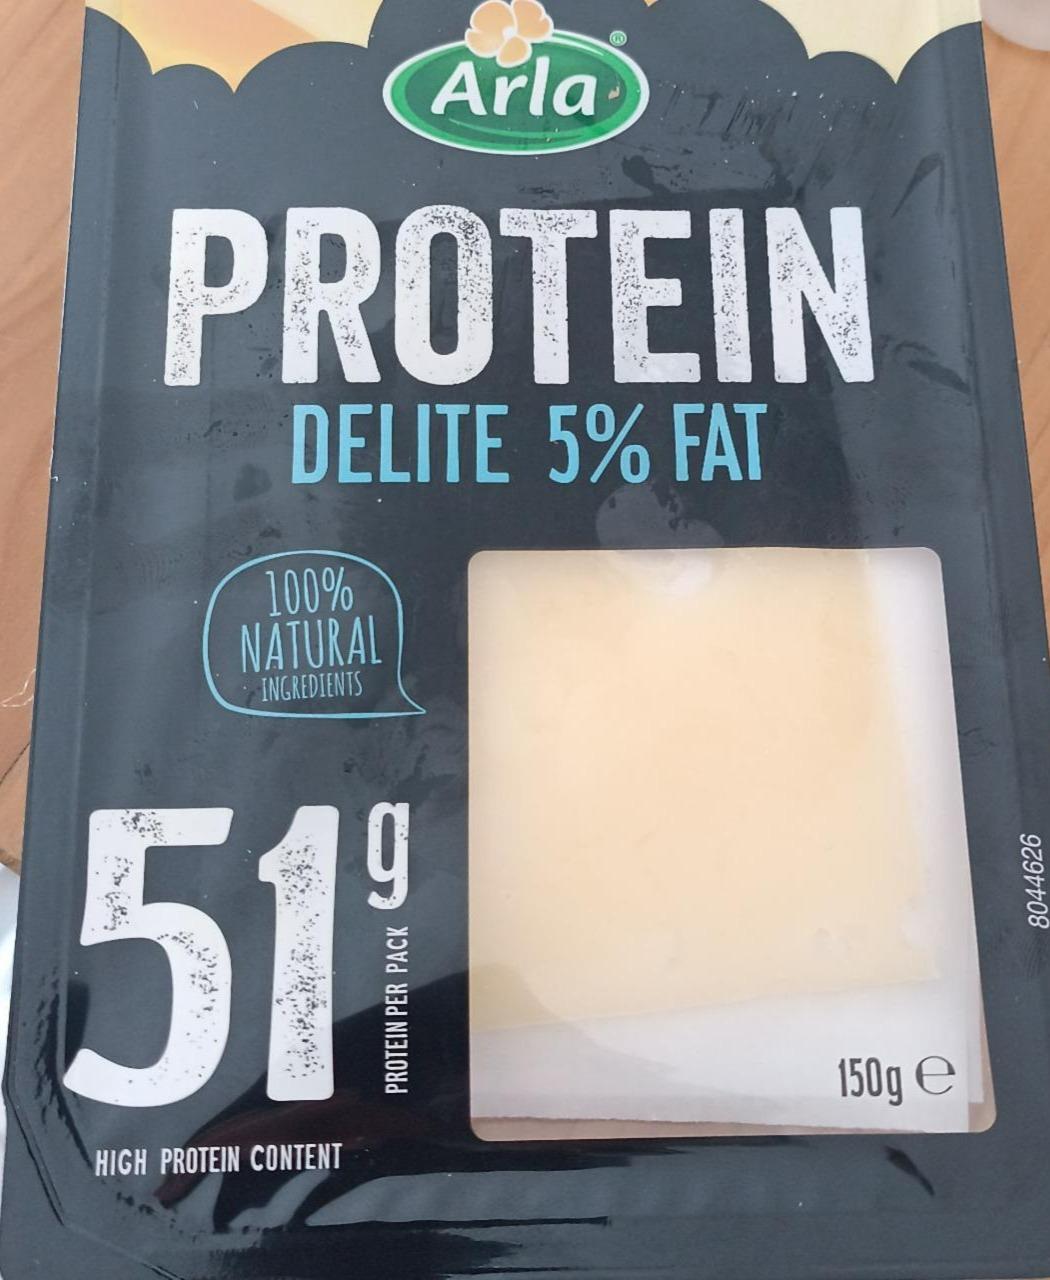 Fotografie - Protein Delite 5% fat Arla